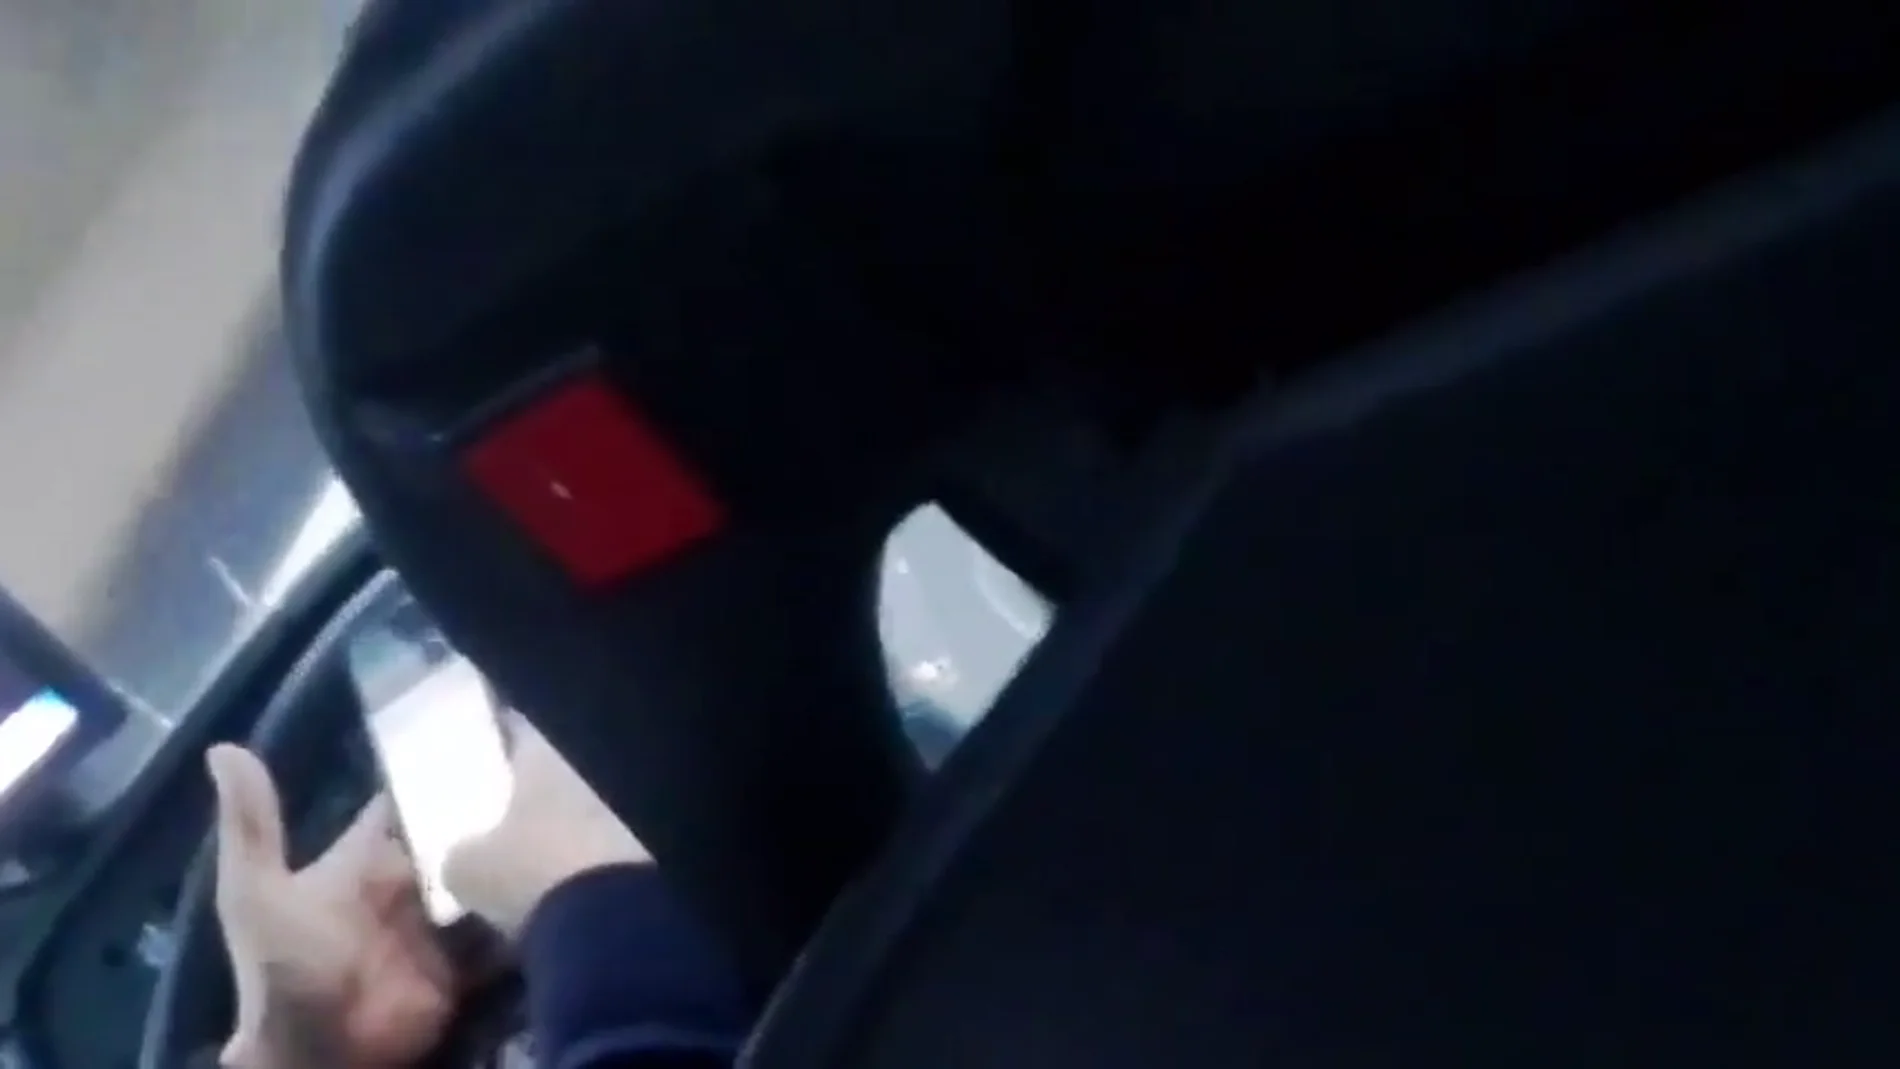 Expedientan al conductor de un autobús de Barcelona por conducir mientras miraba el móvil con las dos manos